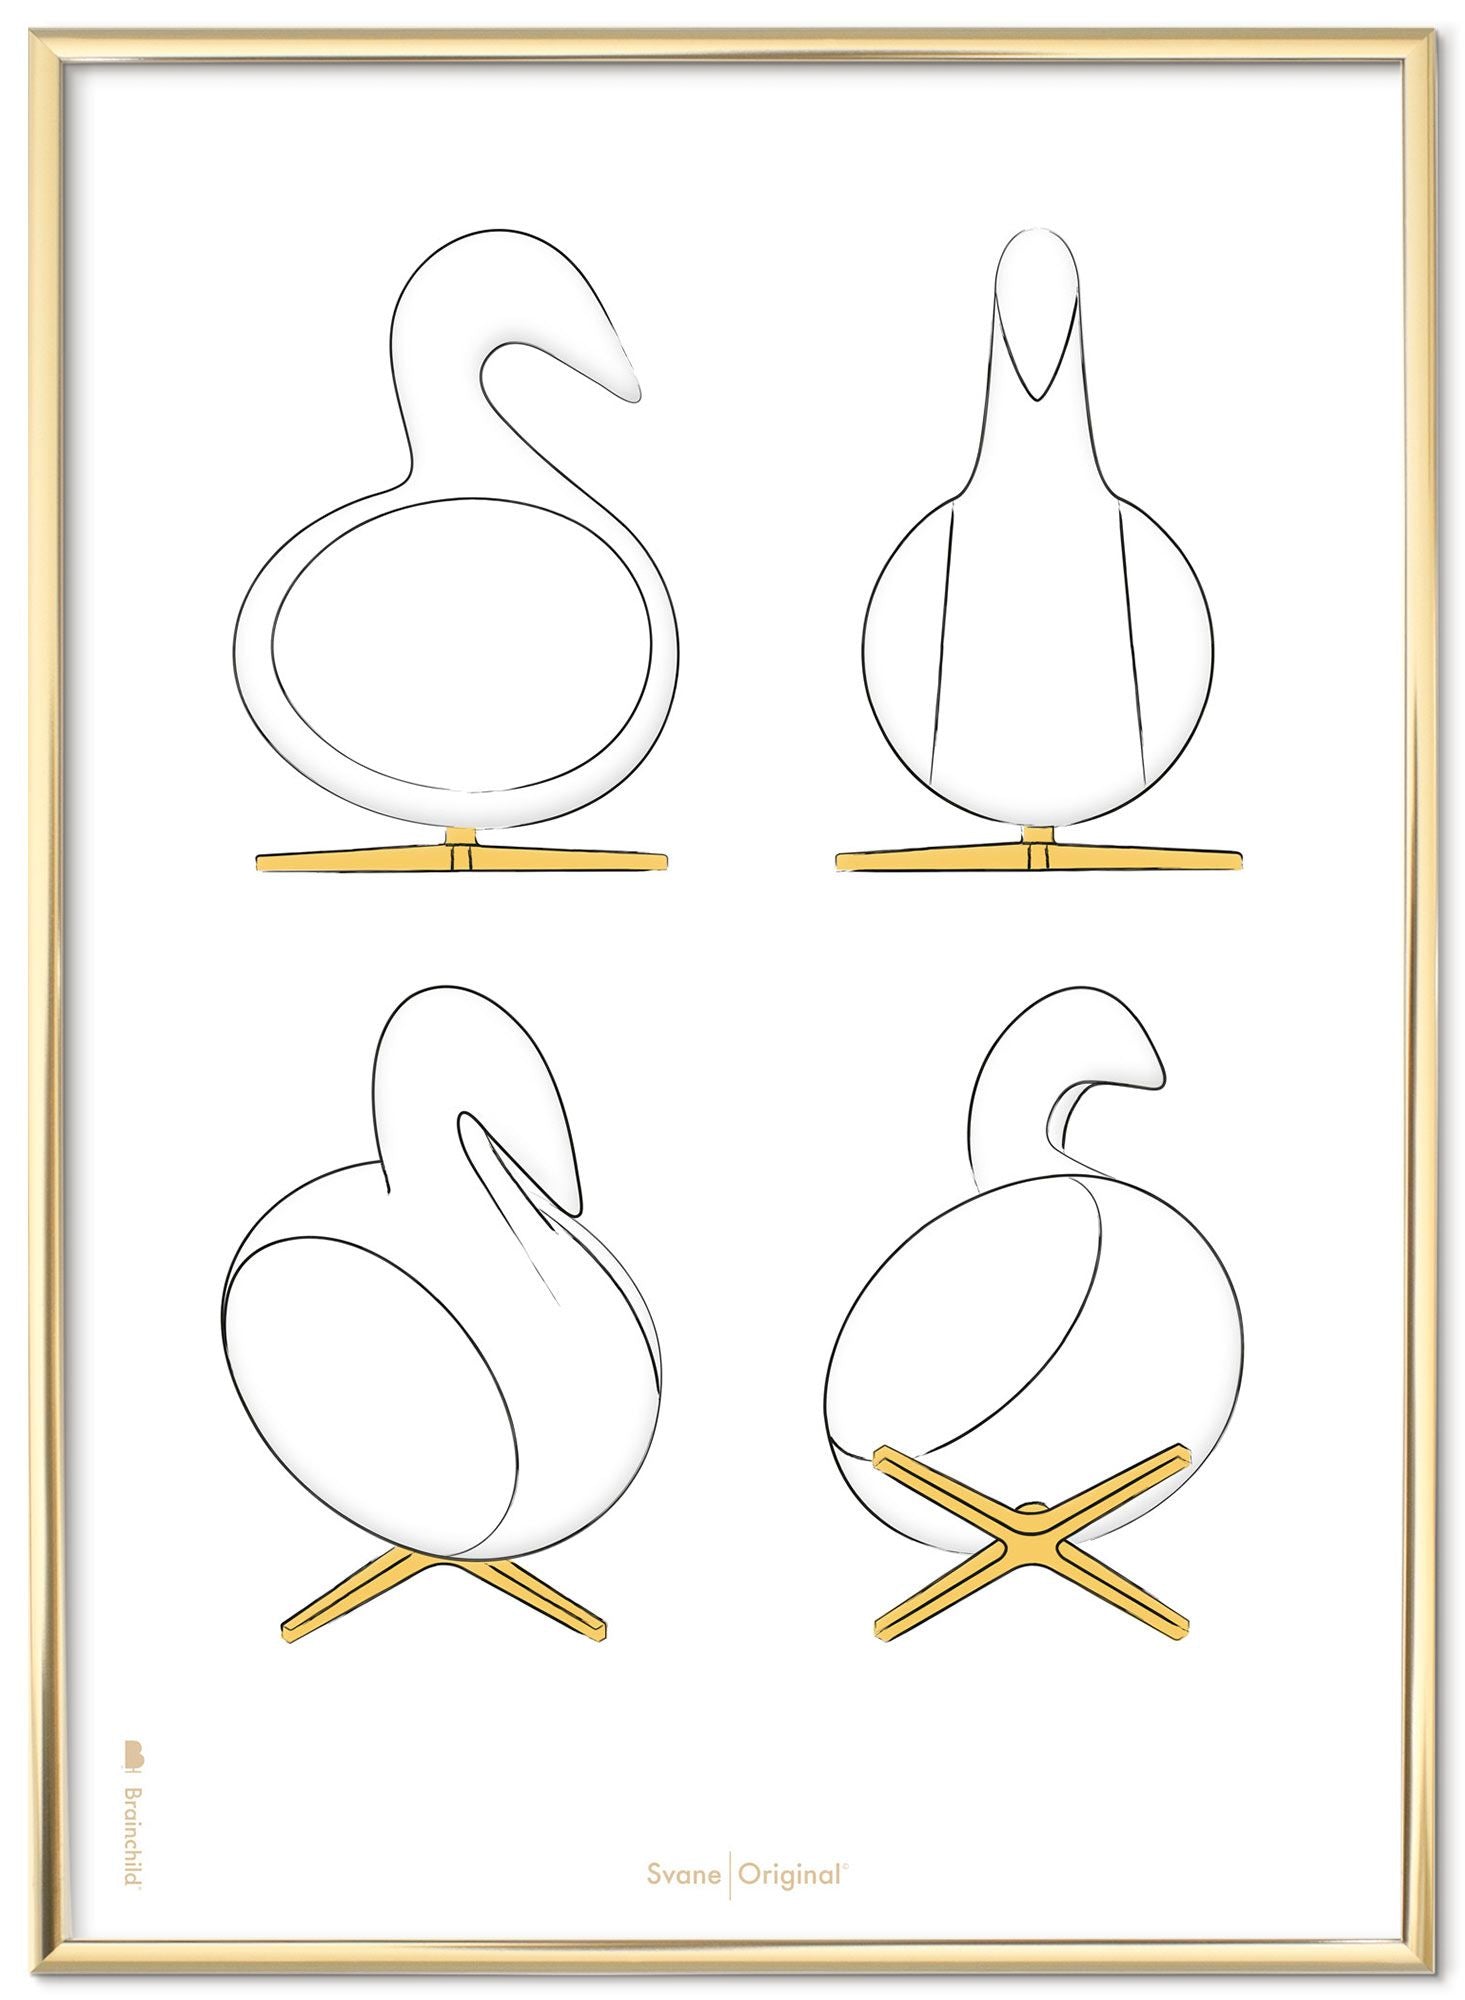 Marco de póster de bocetos de diseño de Swan.